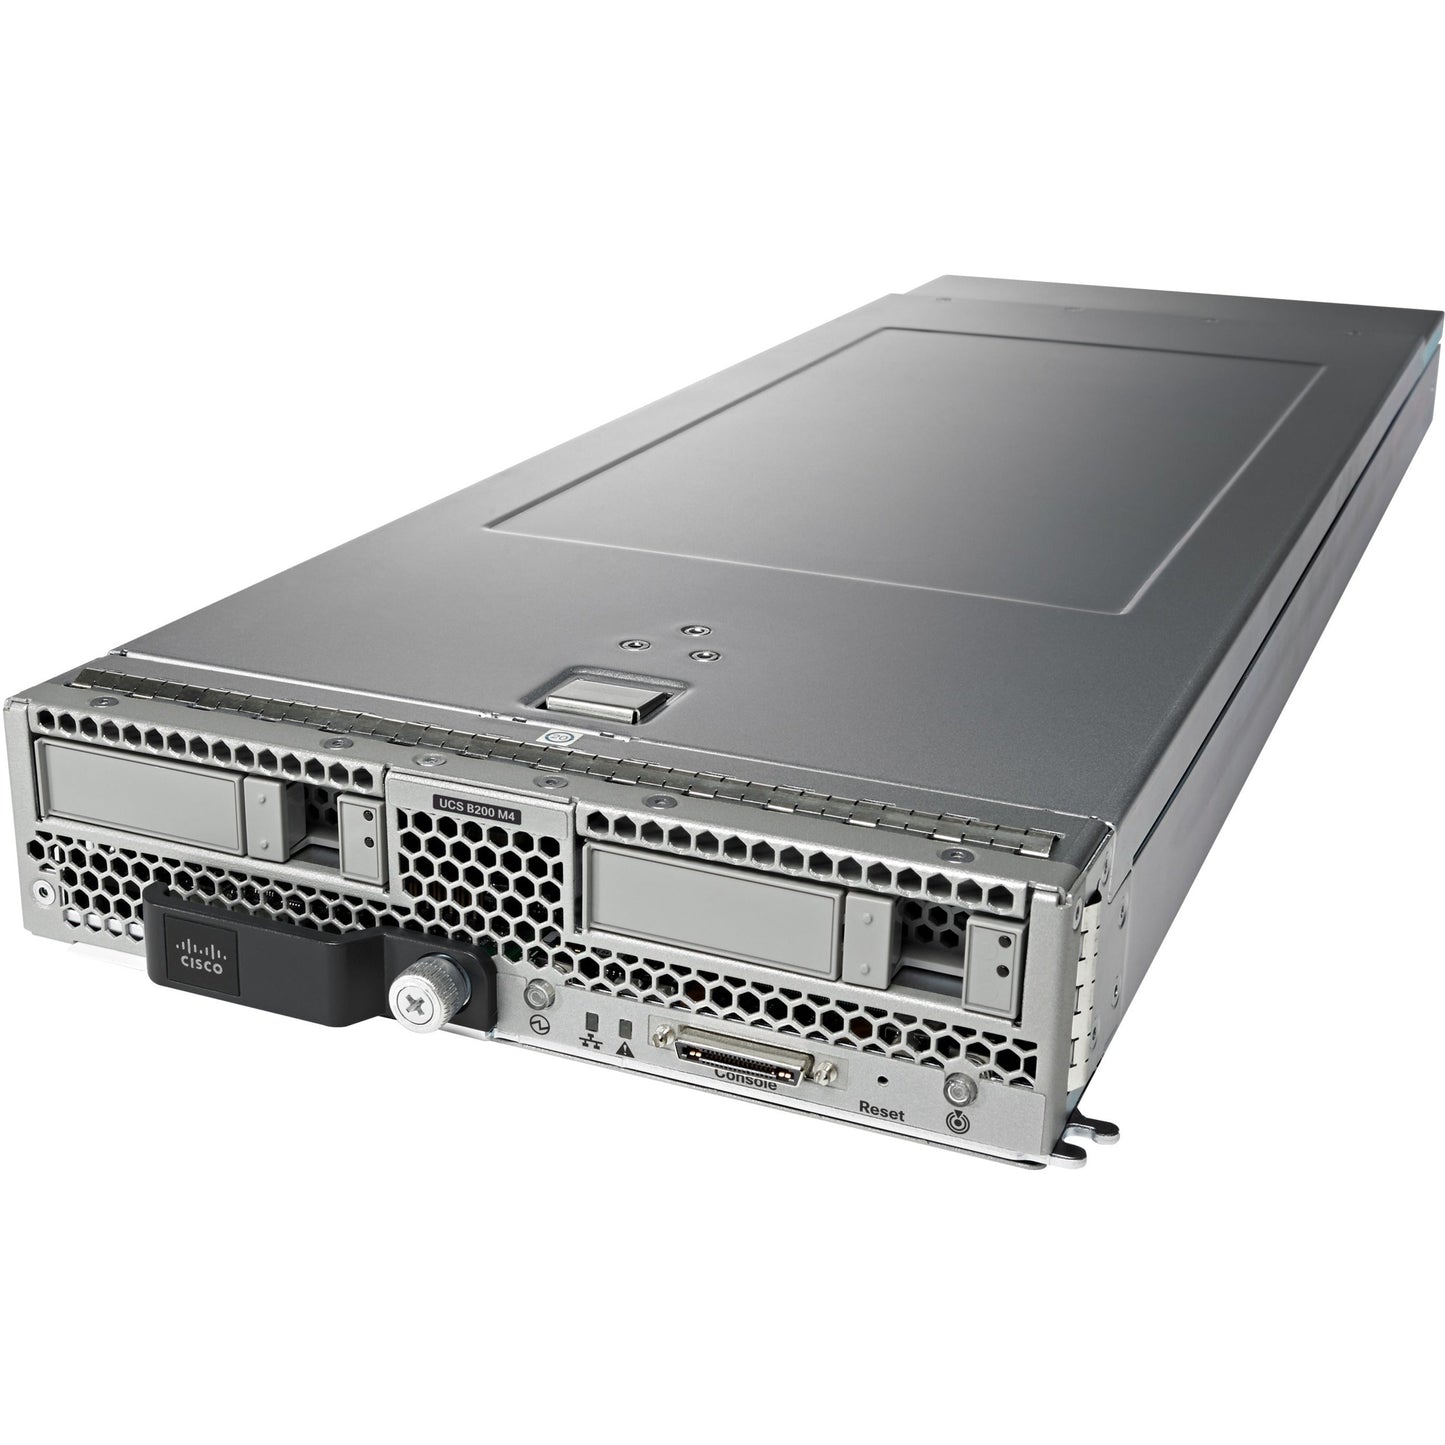 Cisco B200 M4 Blade Server - 2 x Intel Xeon E5-2630 v3 2.40 GHz - 128 GB RAM - Serial Attached SCSI (SAS) Serial ATA Controller